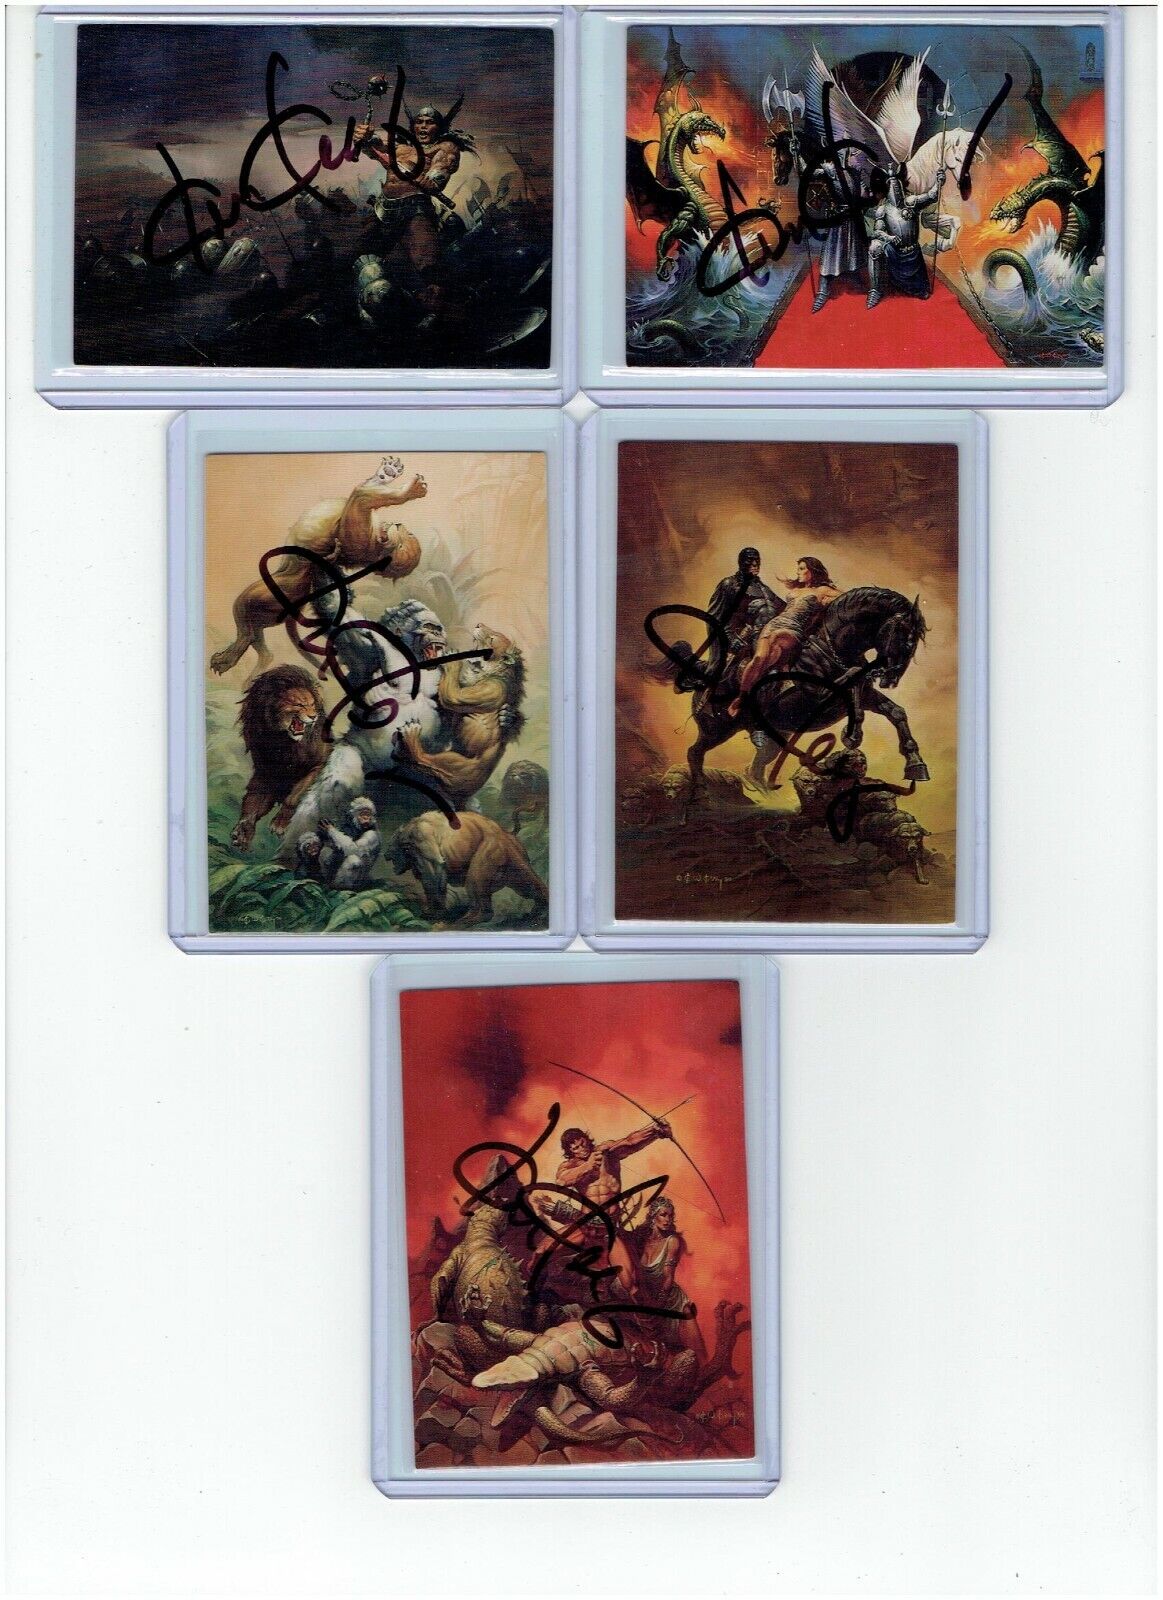 Ken Kelly Signed Series 1 Fantasy Art Trading Cards #81 - #85 1992 FPG